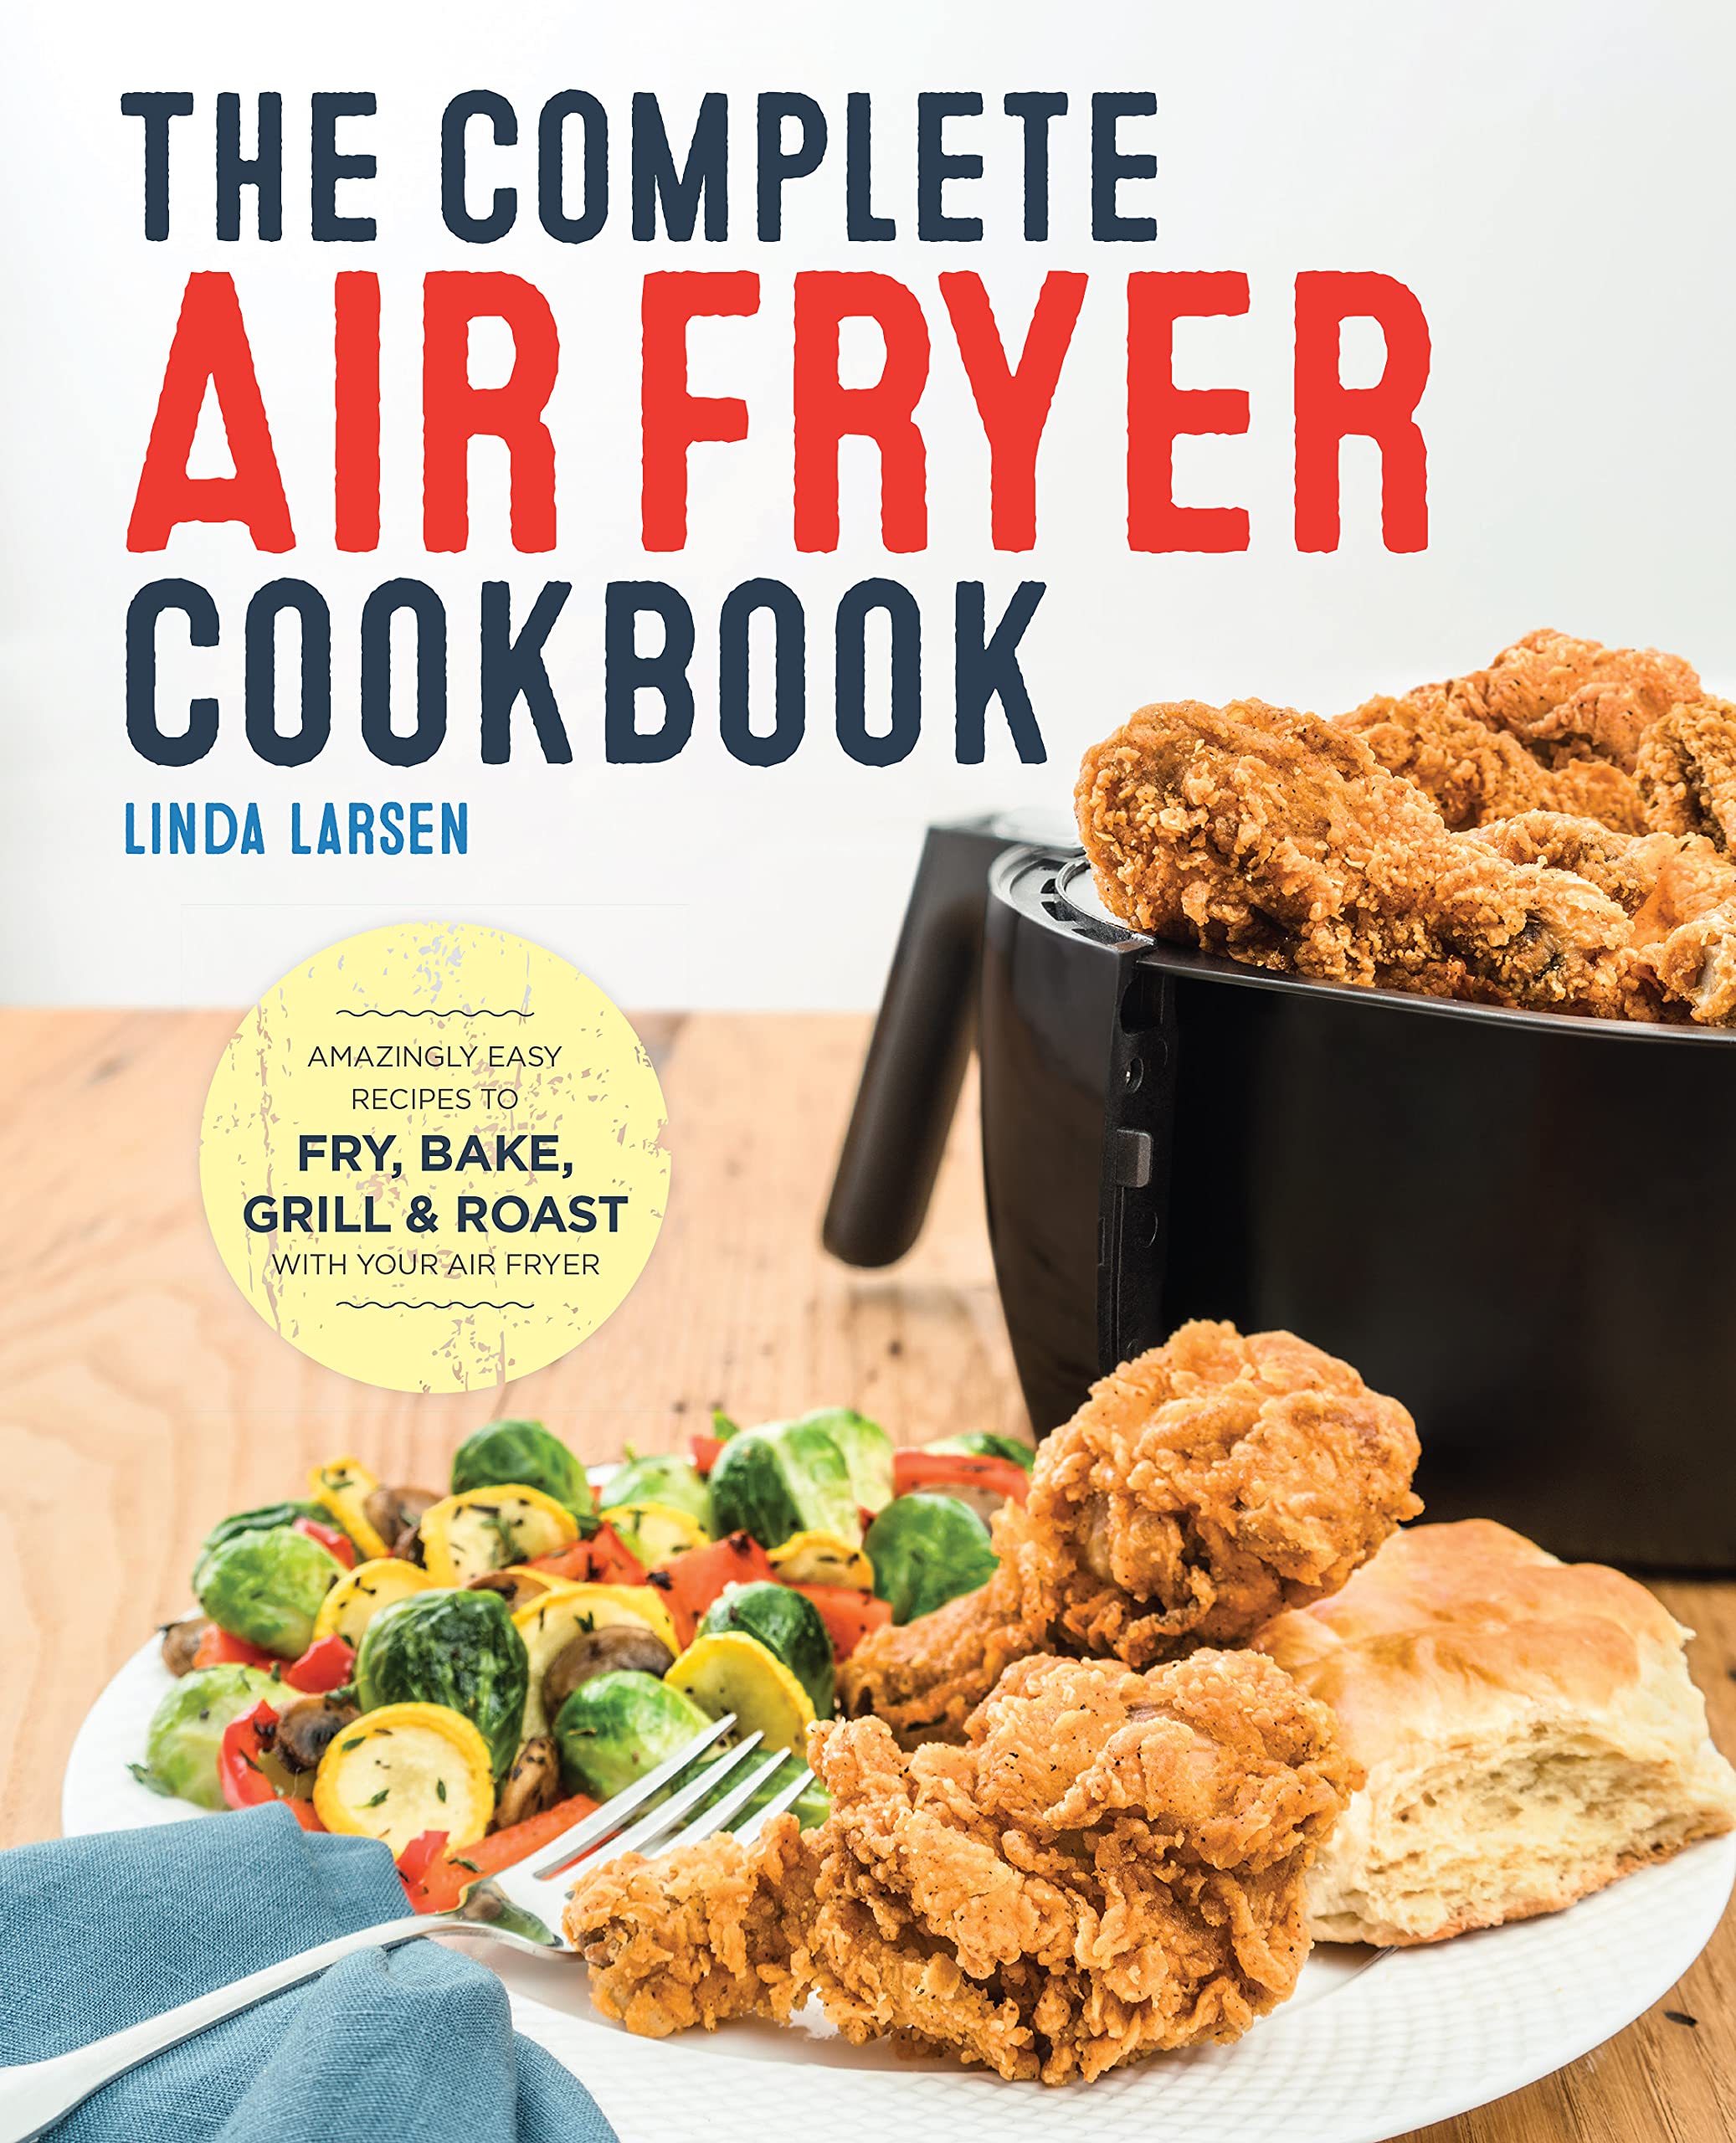 The Complete Air Fryer Cookbook (Linda Larsen)